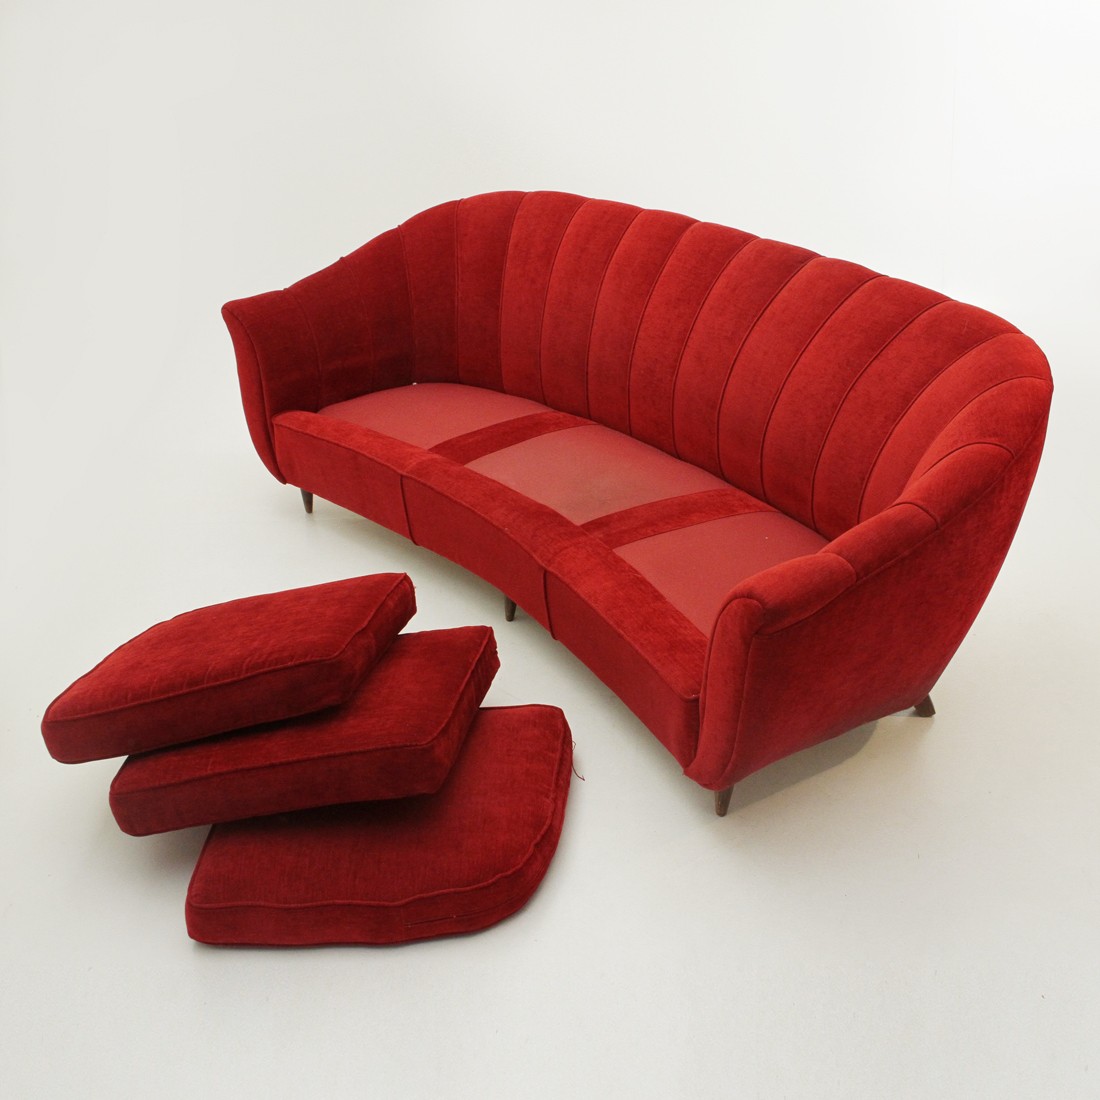 Vintage Italian 3-seat red Velvet Sofa - 1950s - Design Market